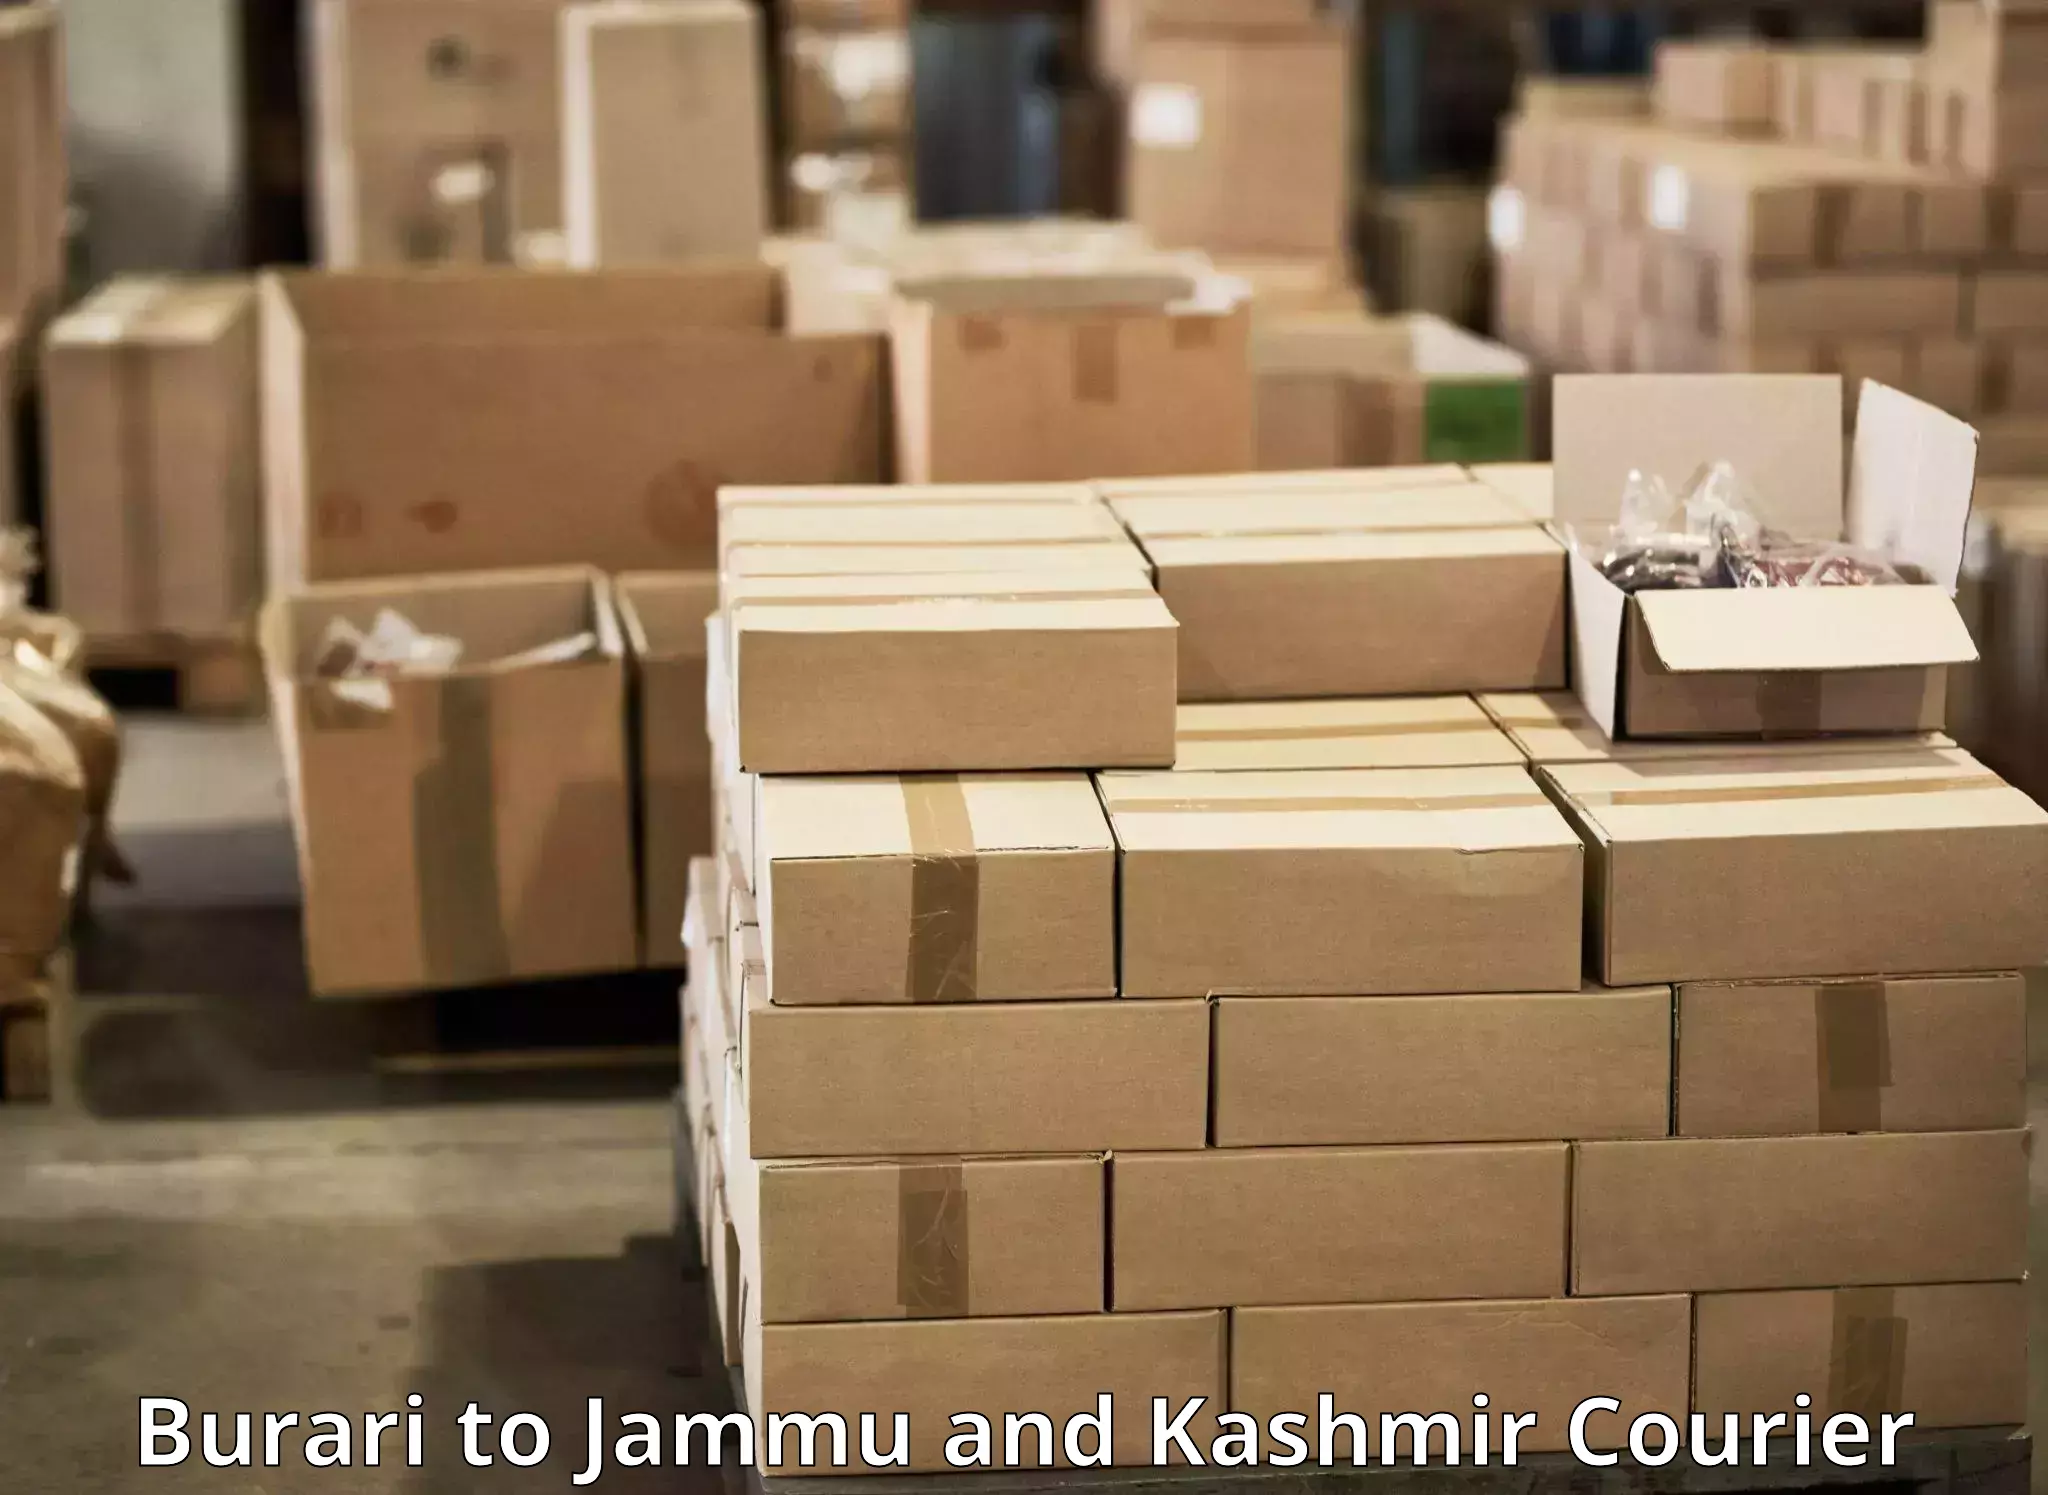 Efficient logistics management Burari to Jammu and Kashmir